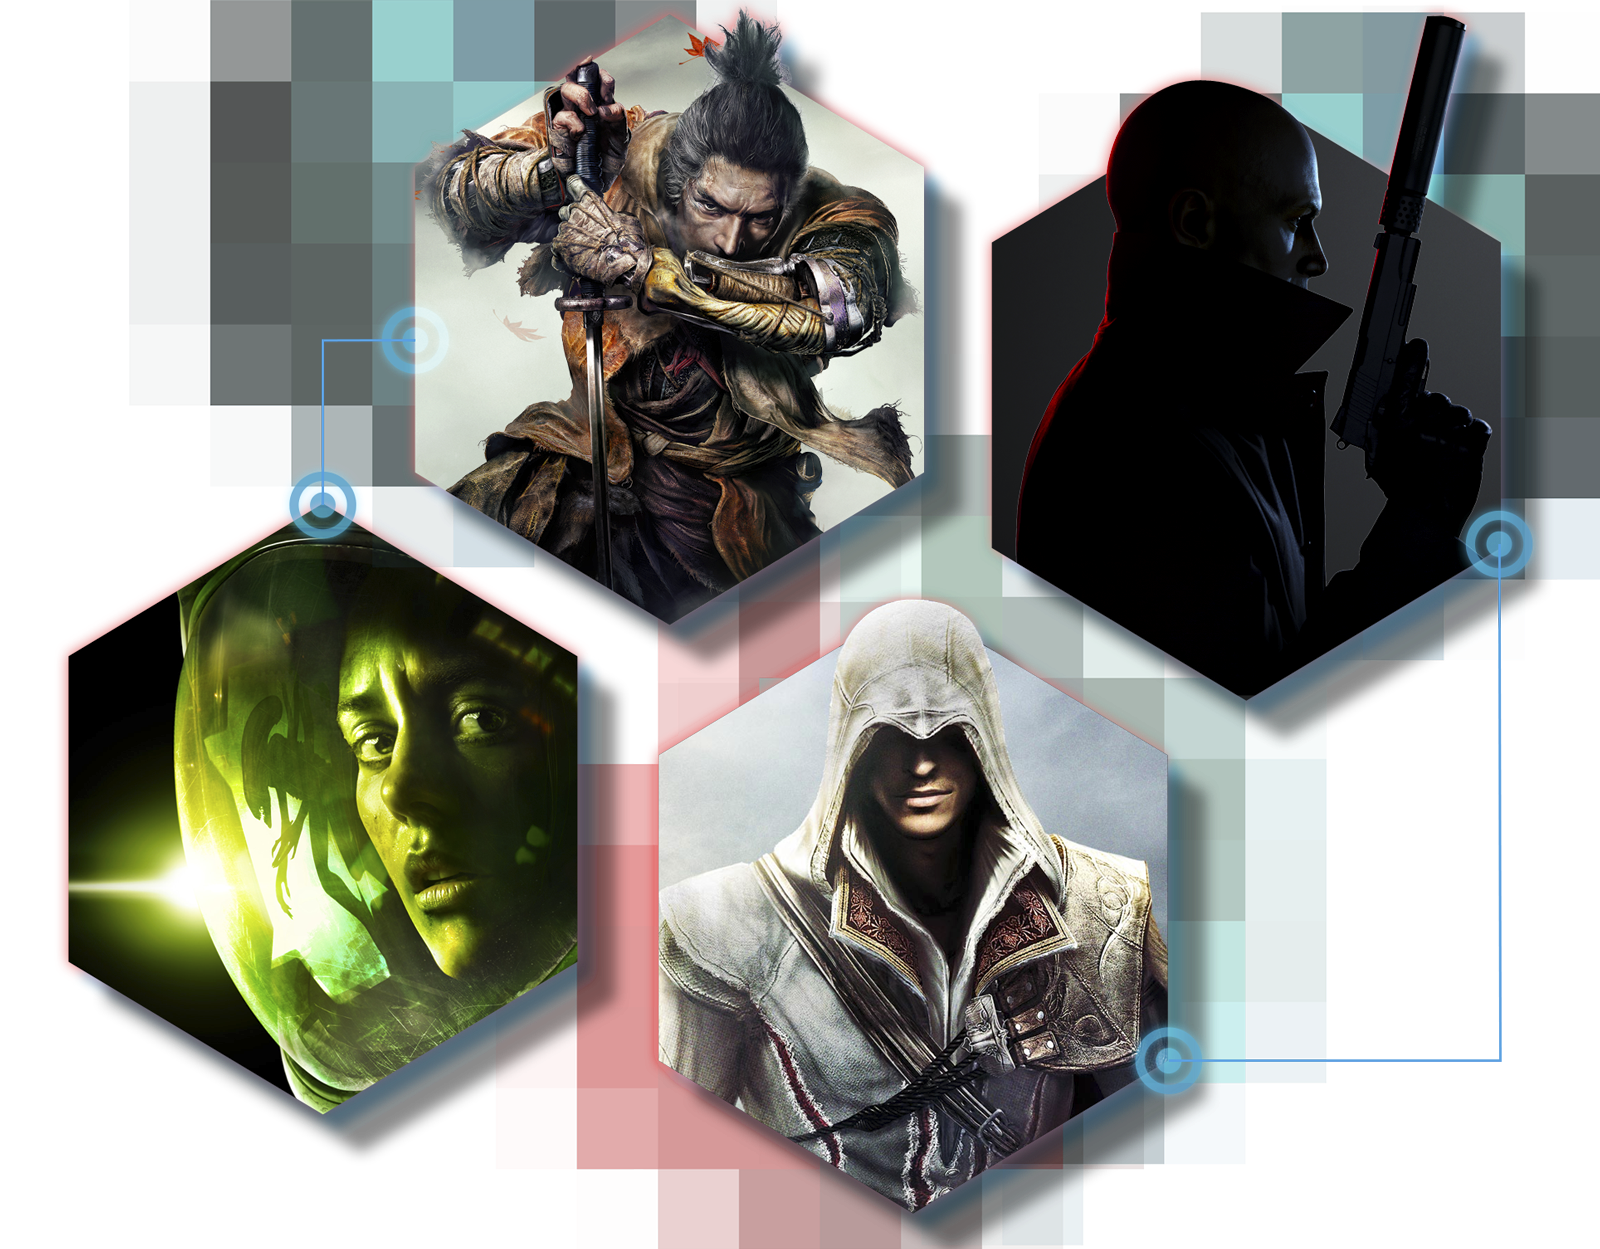 Hiiviskelypelien promokuvitusta, jossa nähdään kuvitusta peleistä Sekiro: Shadows Die Twice, Hitman 3, Alien: Isolation ja Assassin's Creed: The Ezio Collection.